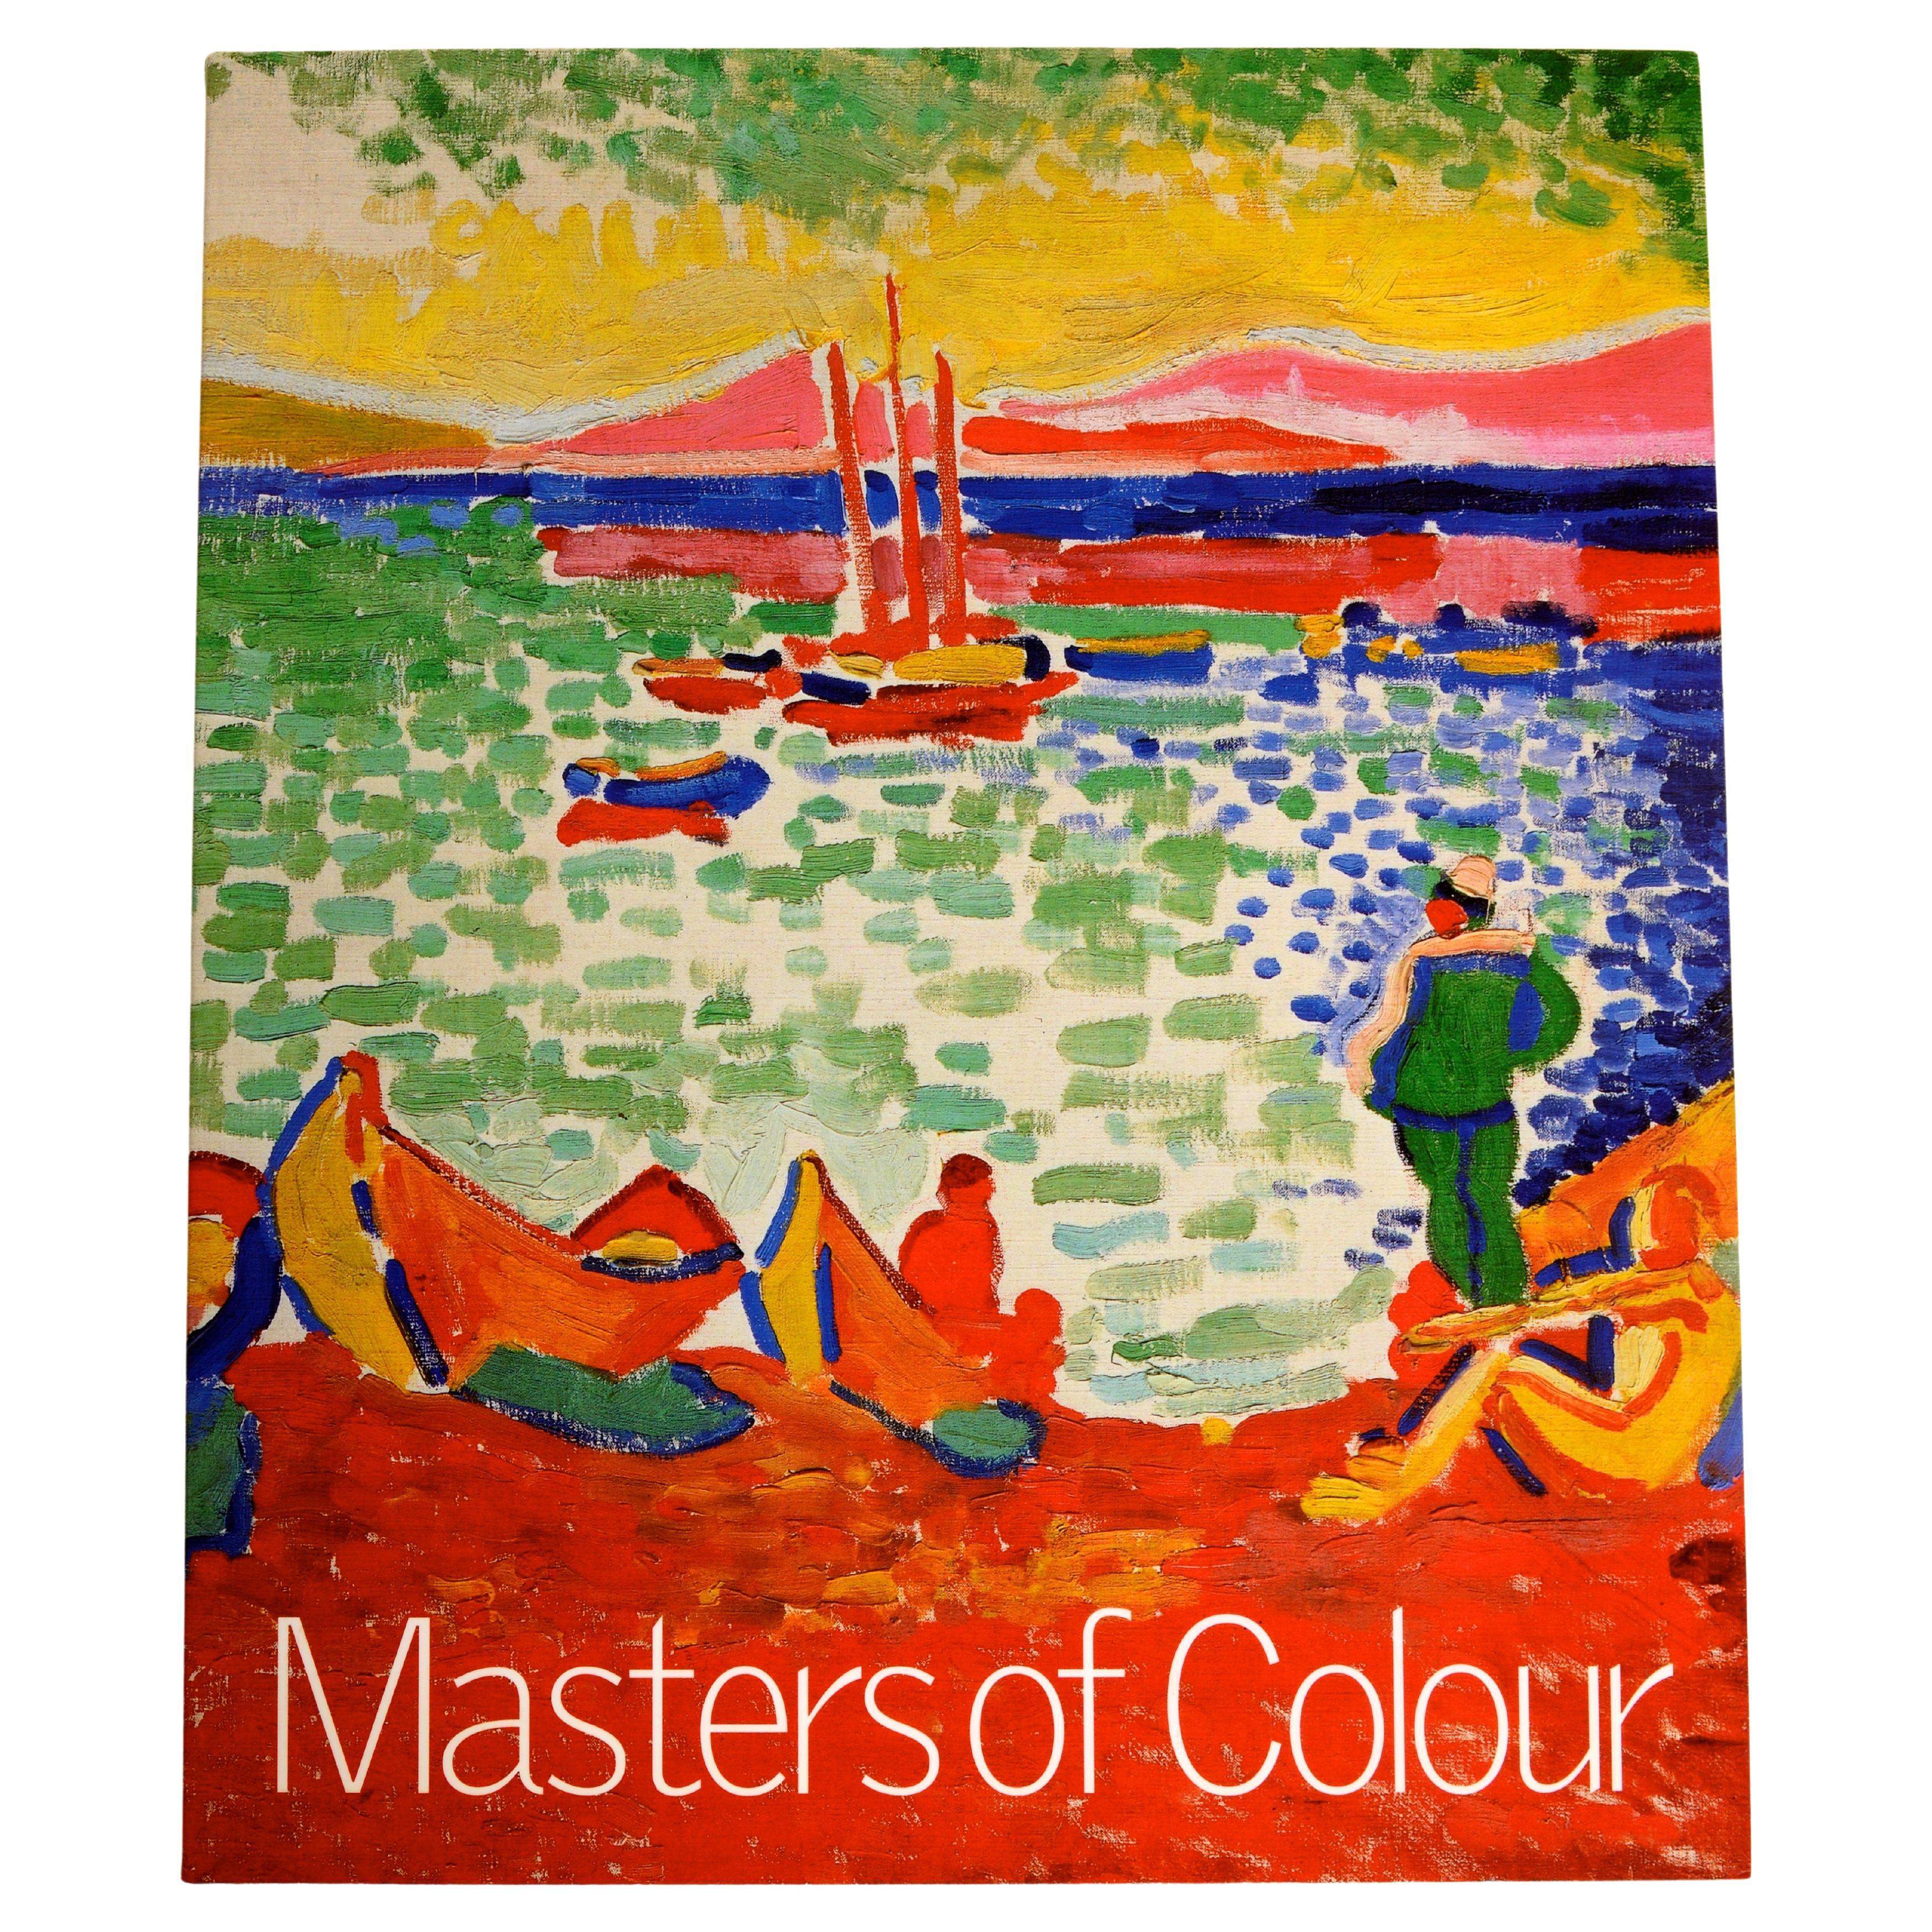 Masters of Colour Derain to Kandinsky, Meisterwerke aus der Merzbacher Collection